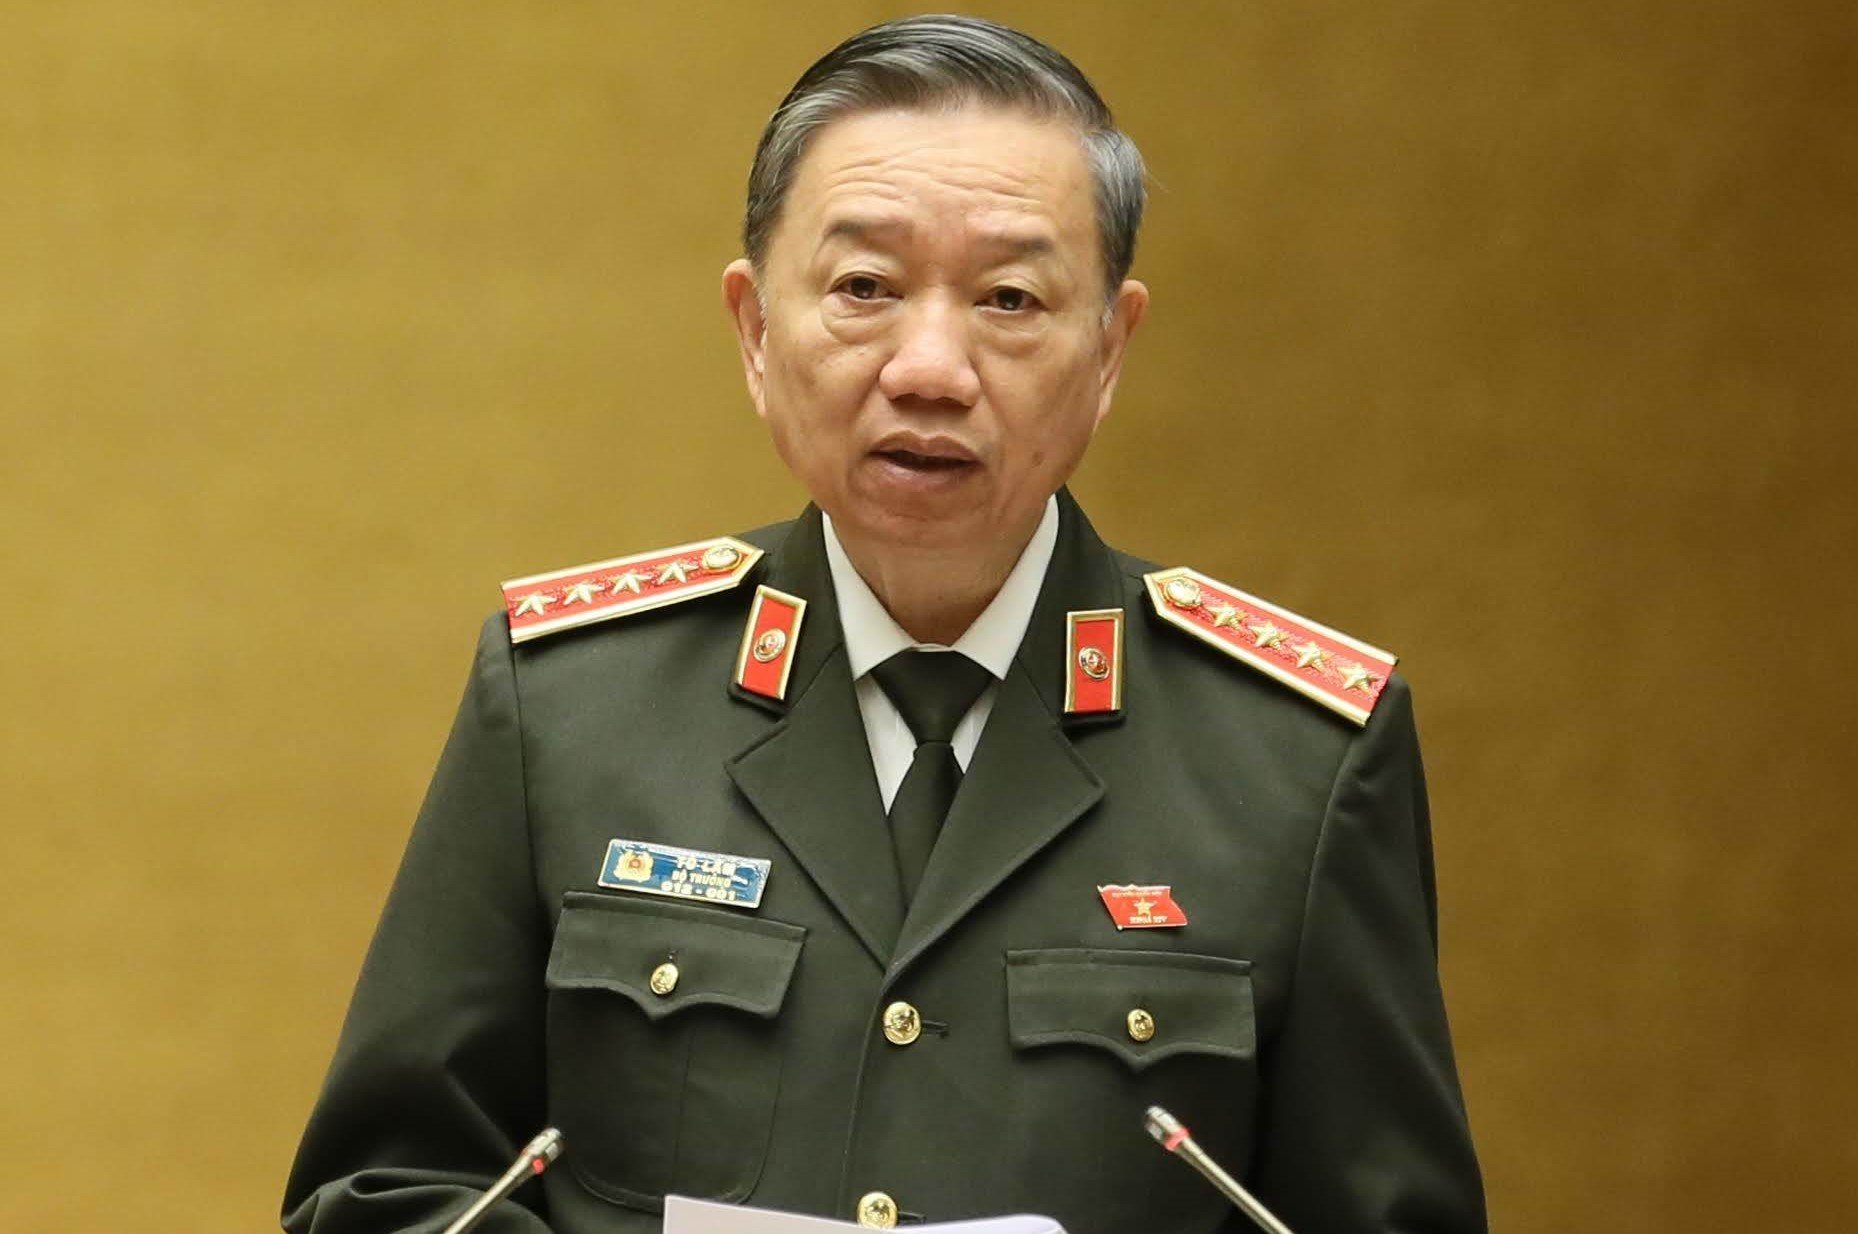 Bộ trưởng Tô Lâm: Sử dụng biện pháp vũ trang chủ yếu là cảnh sát cơ động